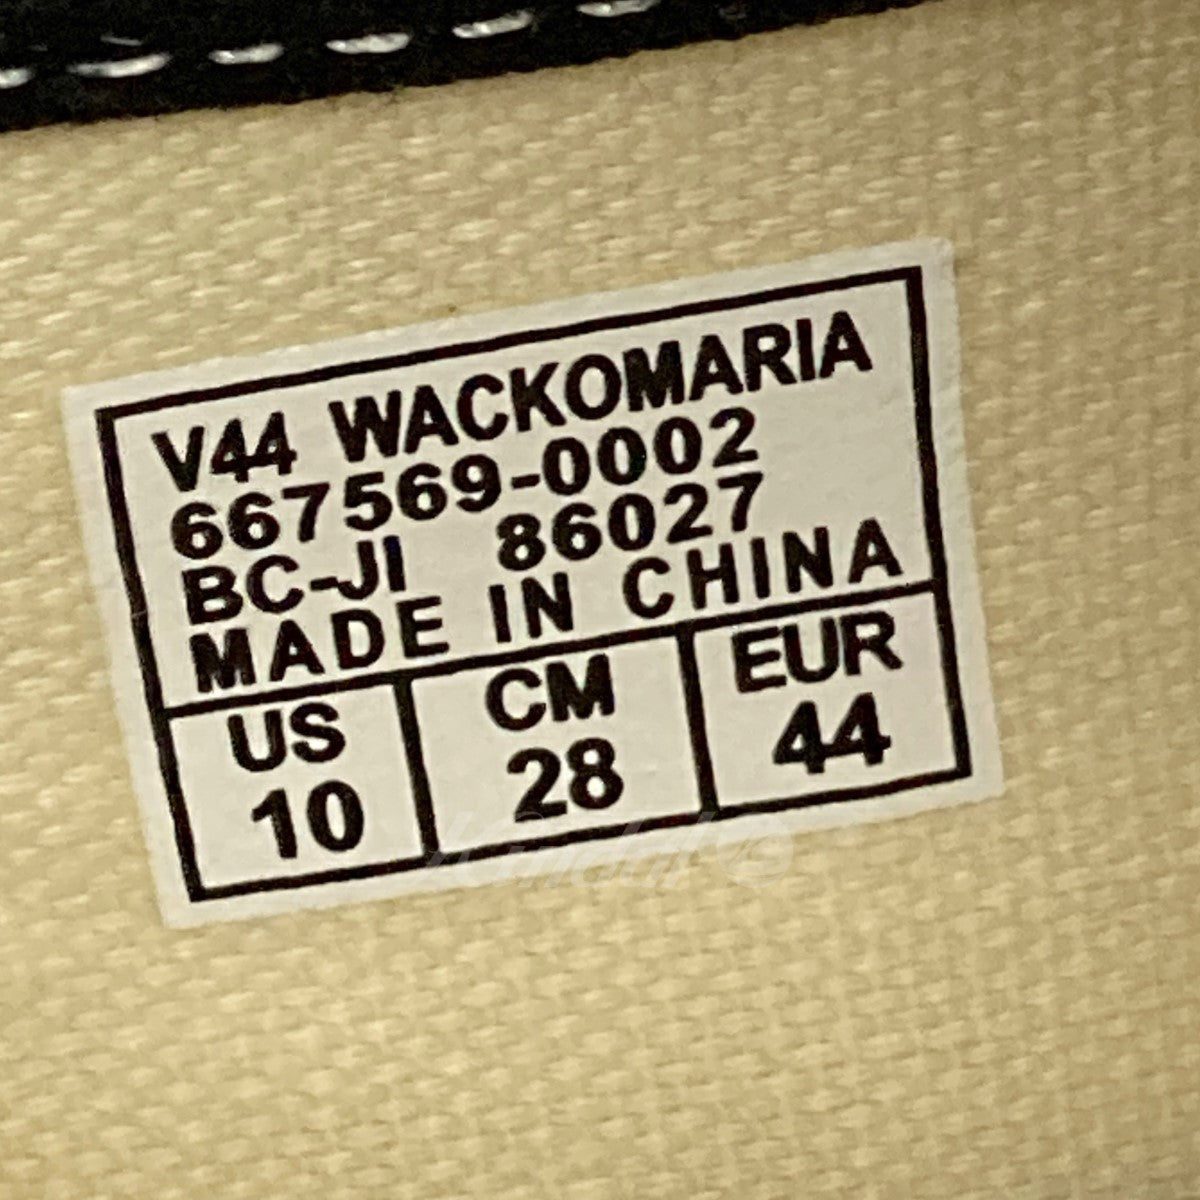 VANS×WACKO MARIA 「Authentic」 レオパード柄スニーカー 667569-0002 